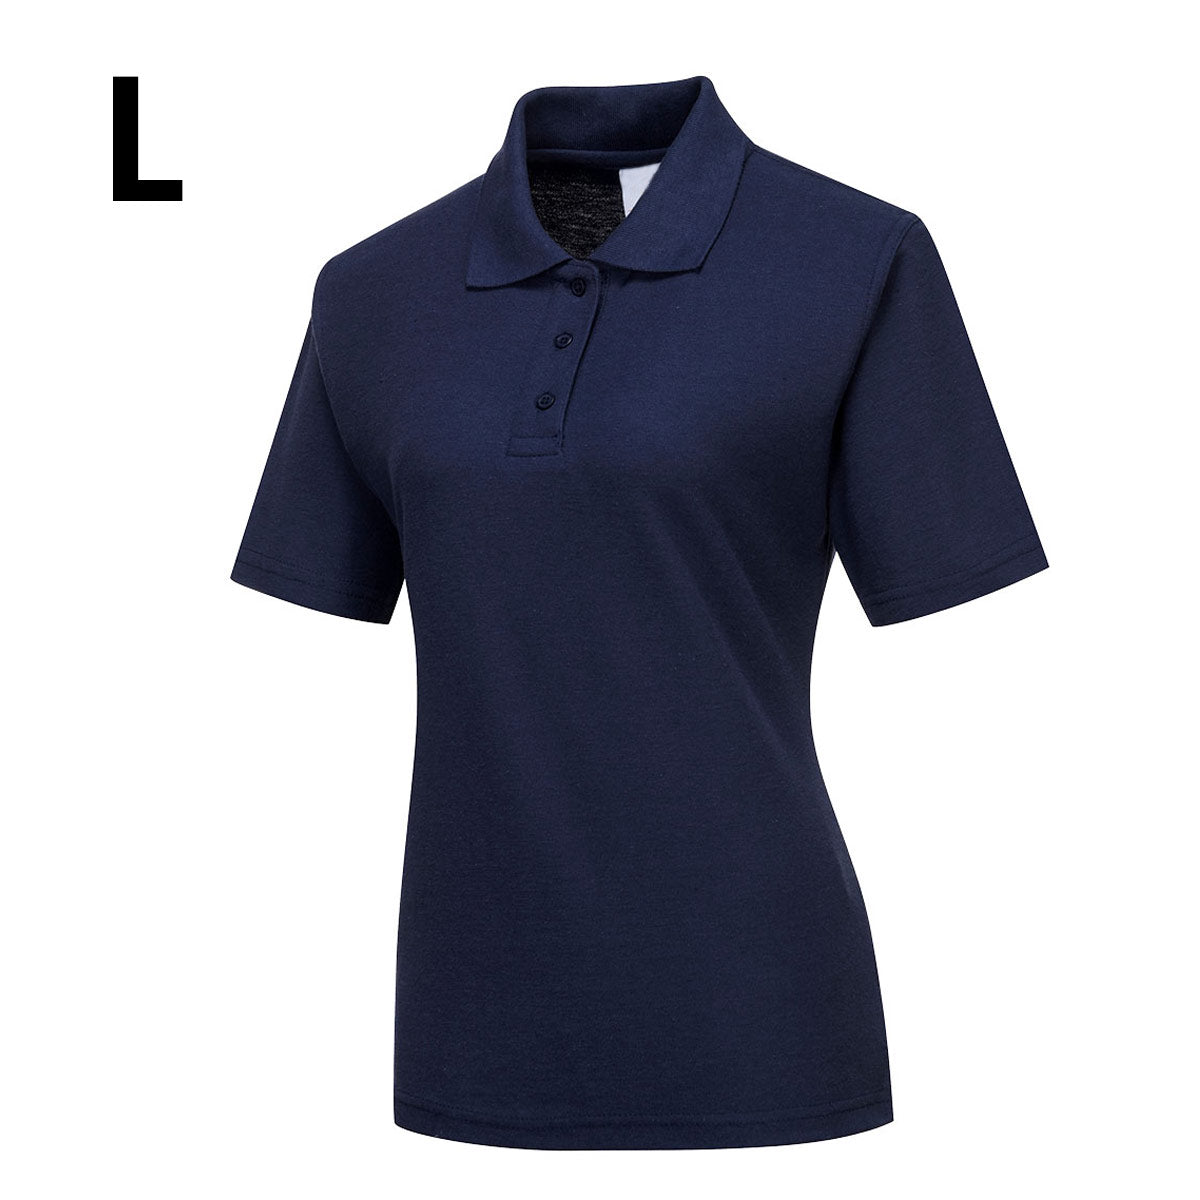 Poloshirt til damer - Marine blå - Størrelse: L